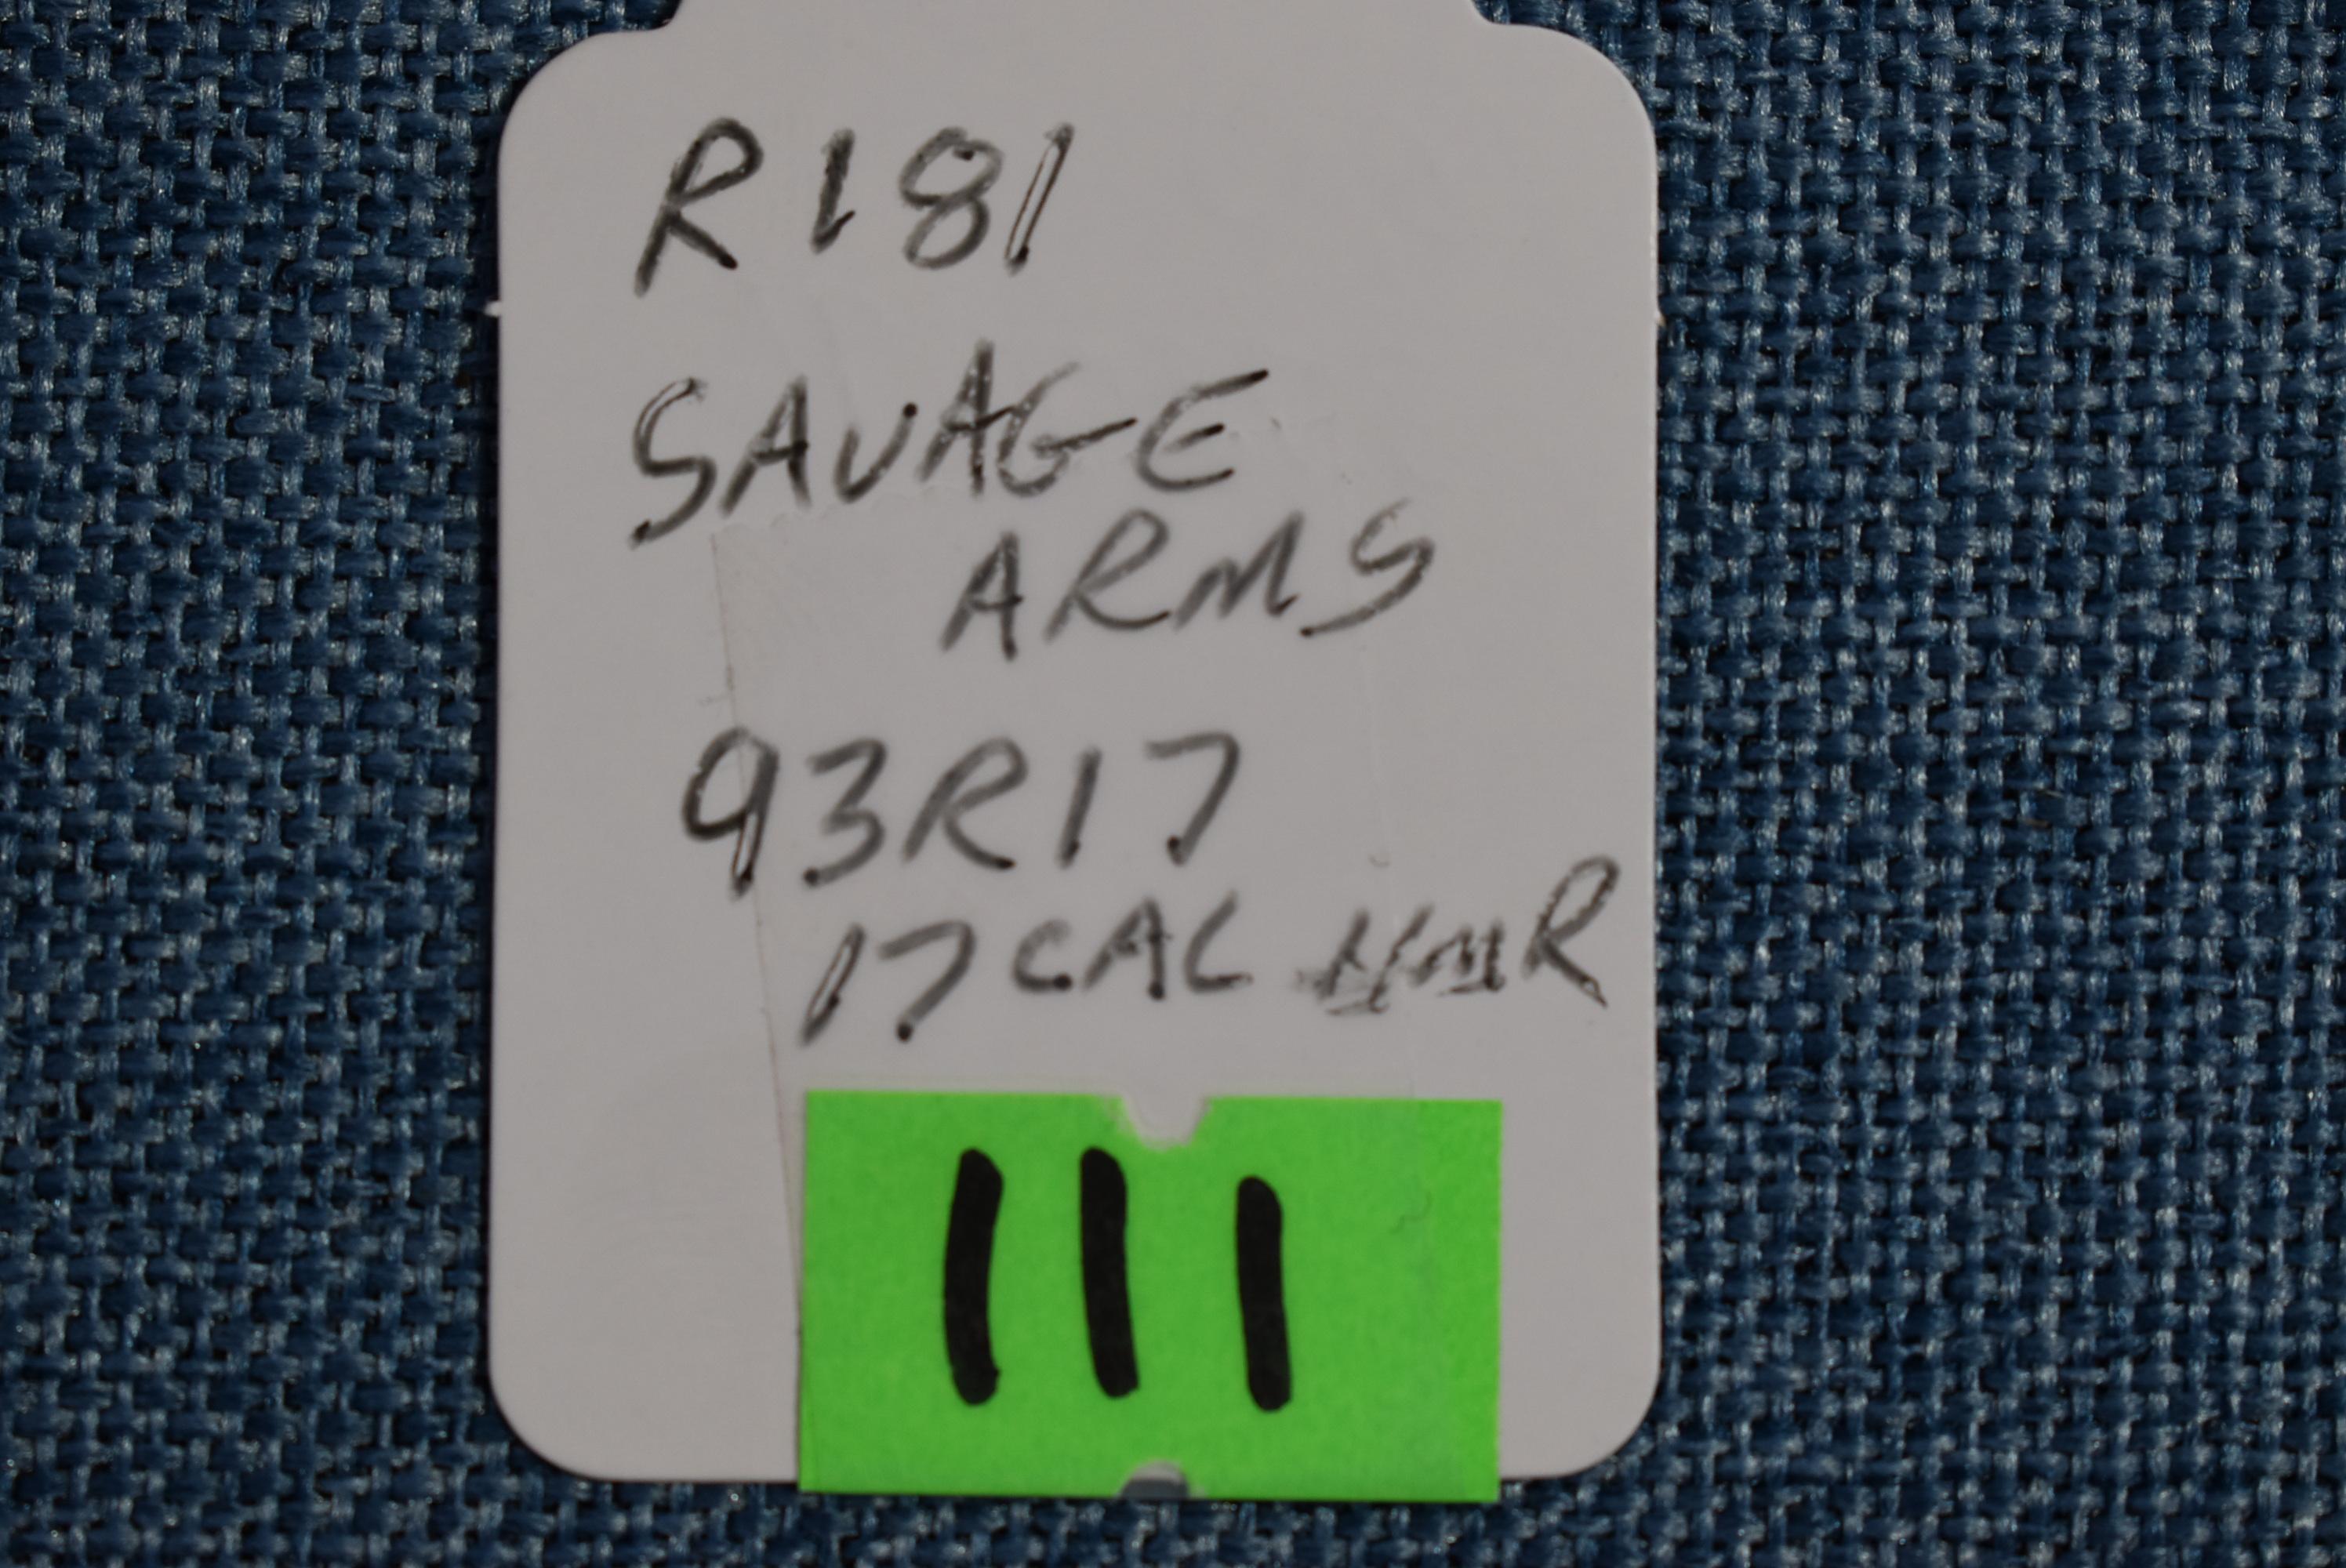 FIREARM/GUN SAVAGE ARMS 93R17 !! R 181